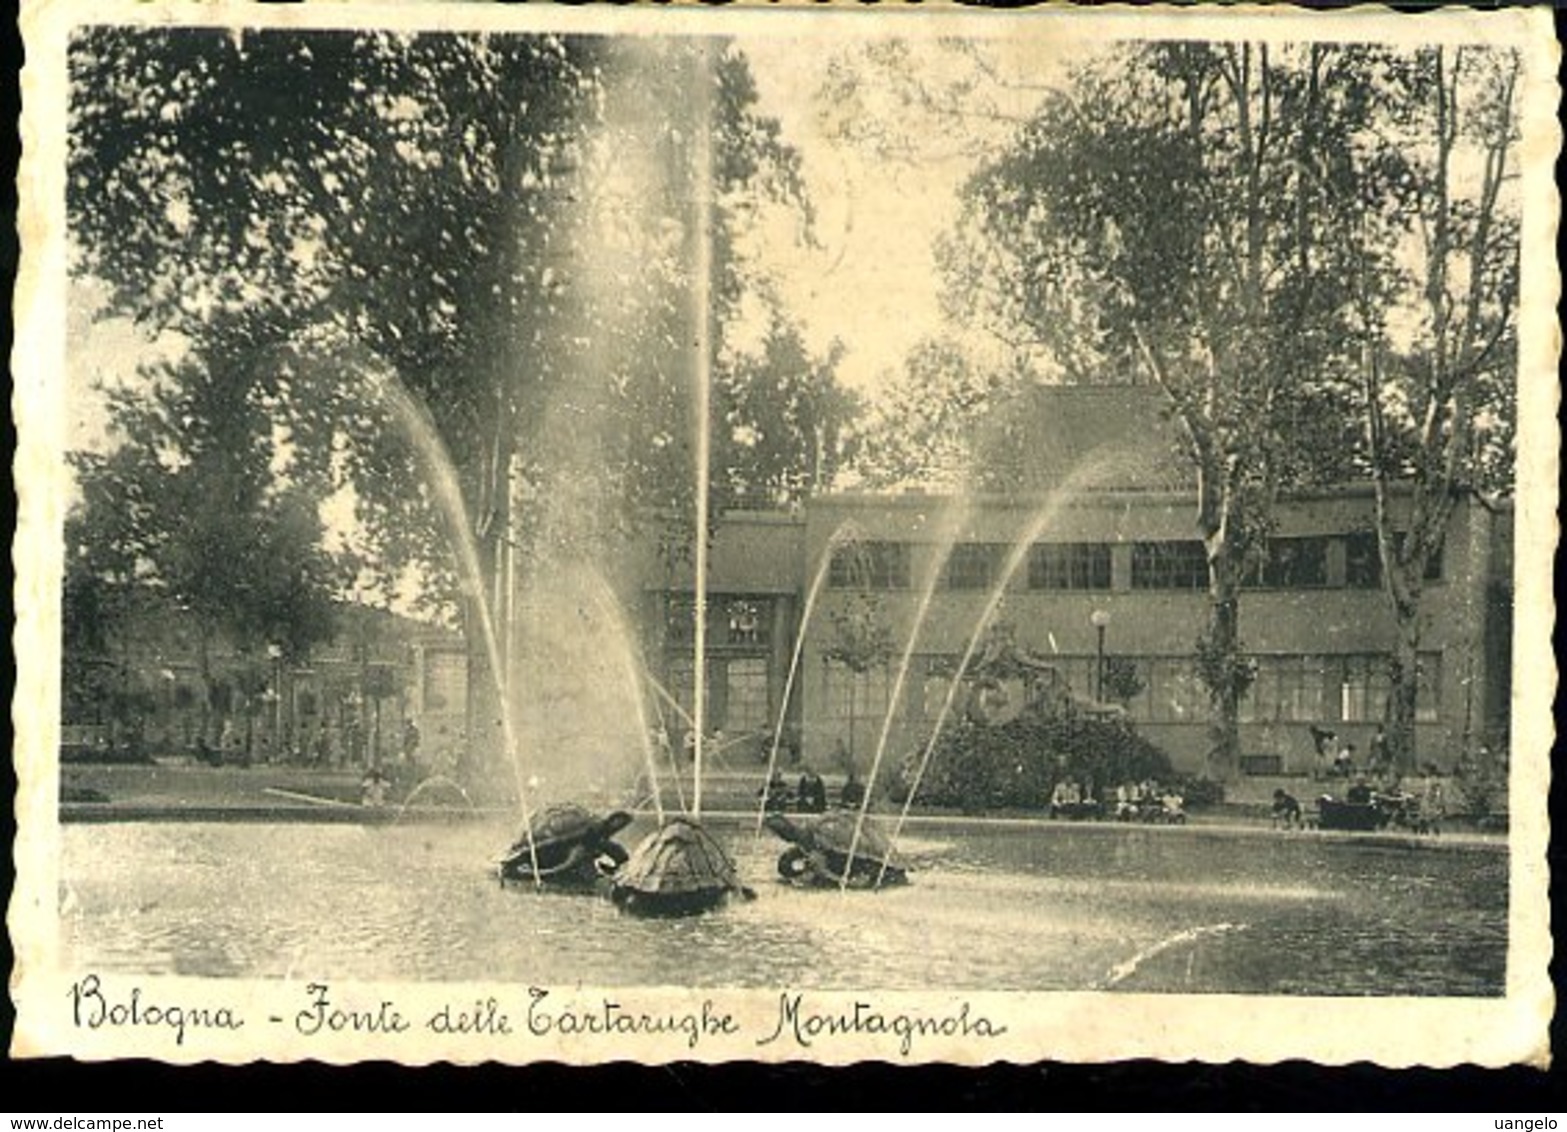 WD200 BOLOGNA - FONTE DELLE TARTARUGHE , MONTAGNOLA 1936 - Bologna